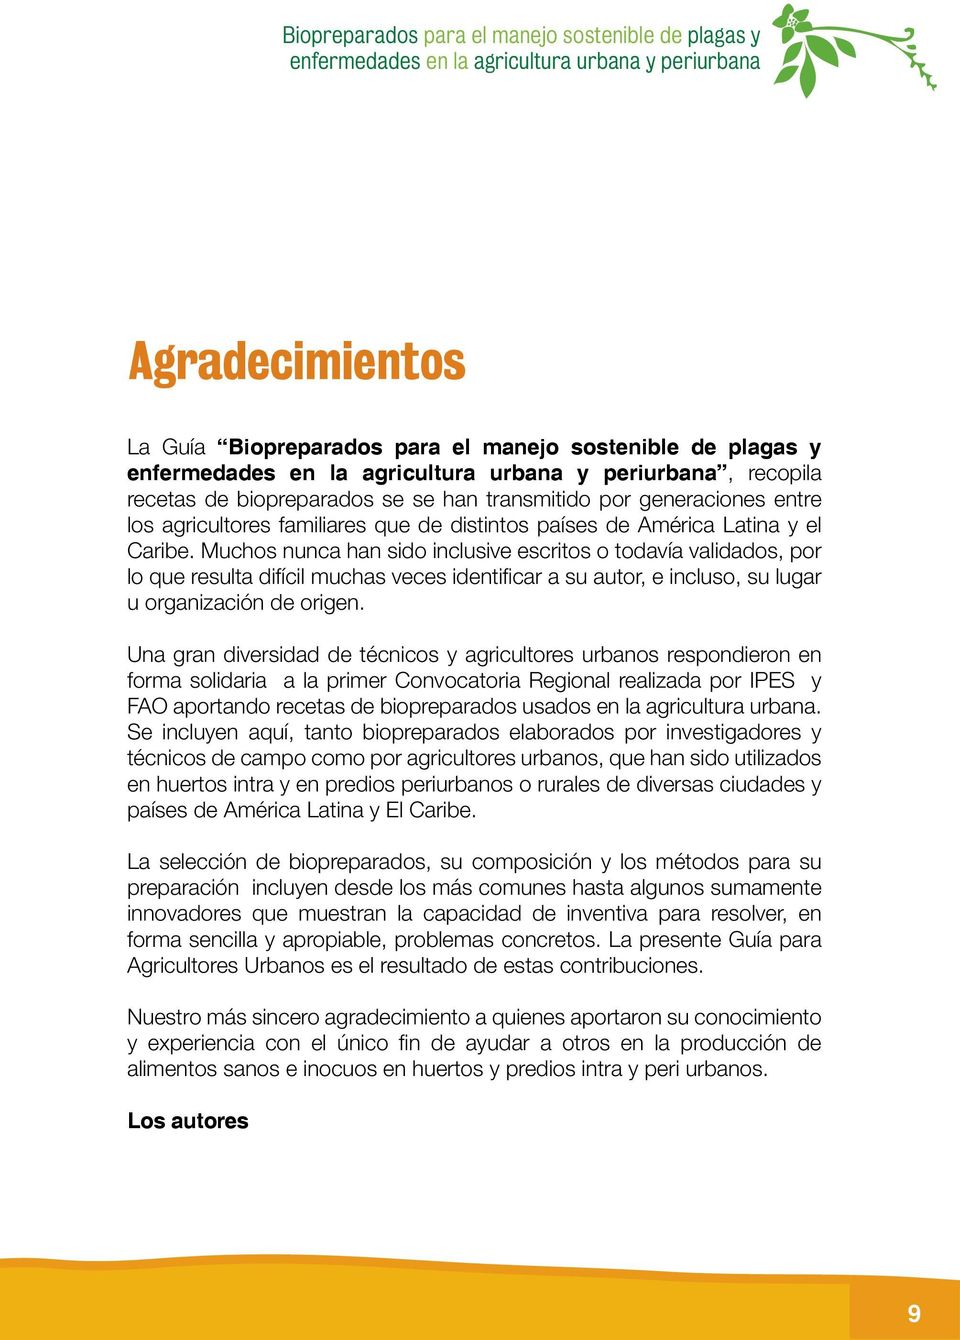 Biopreparados para el manejo sostenible de plagas y enfermedades en la  agricultura urbana y periurbana. guía. Cómo hacerlo? - PDF Free Download